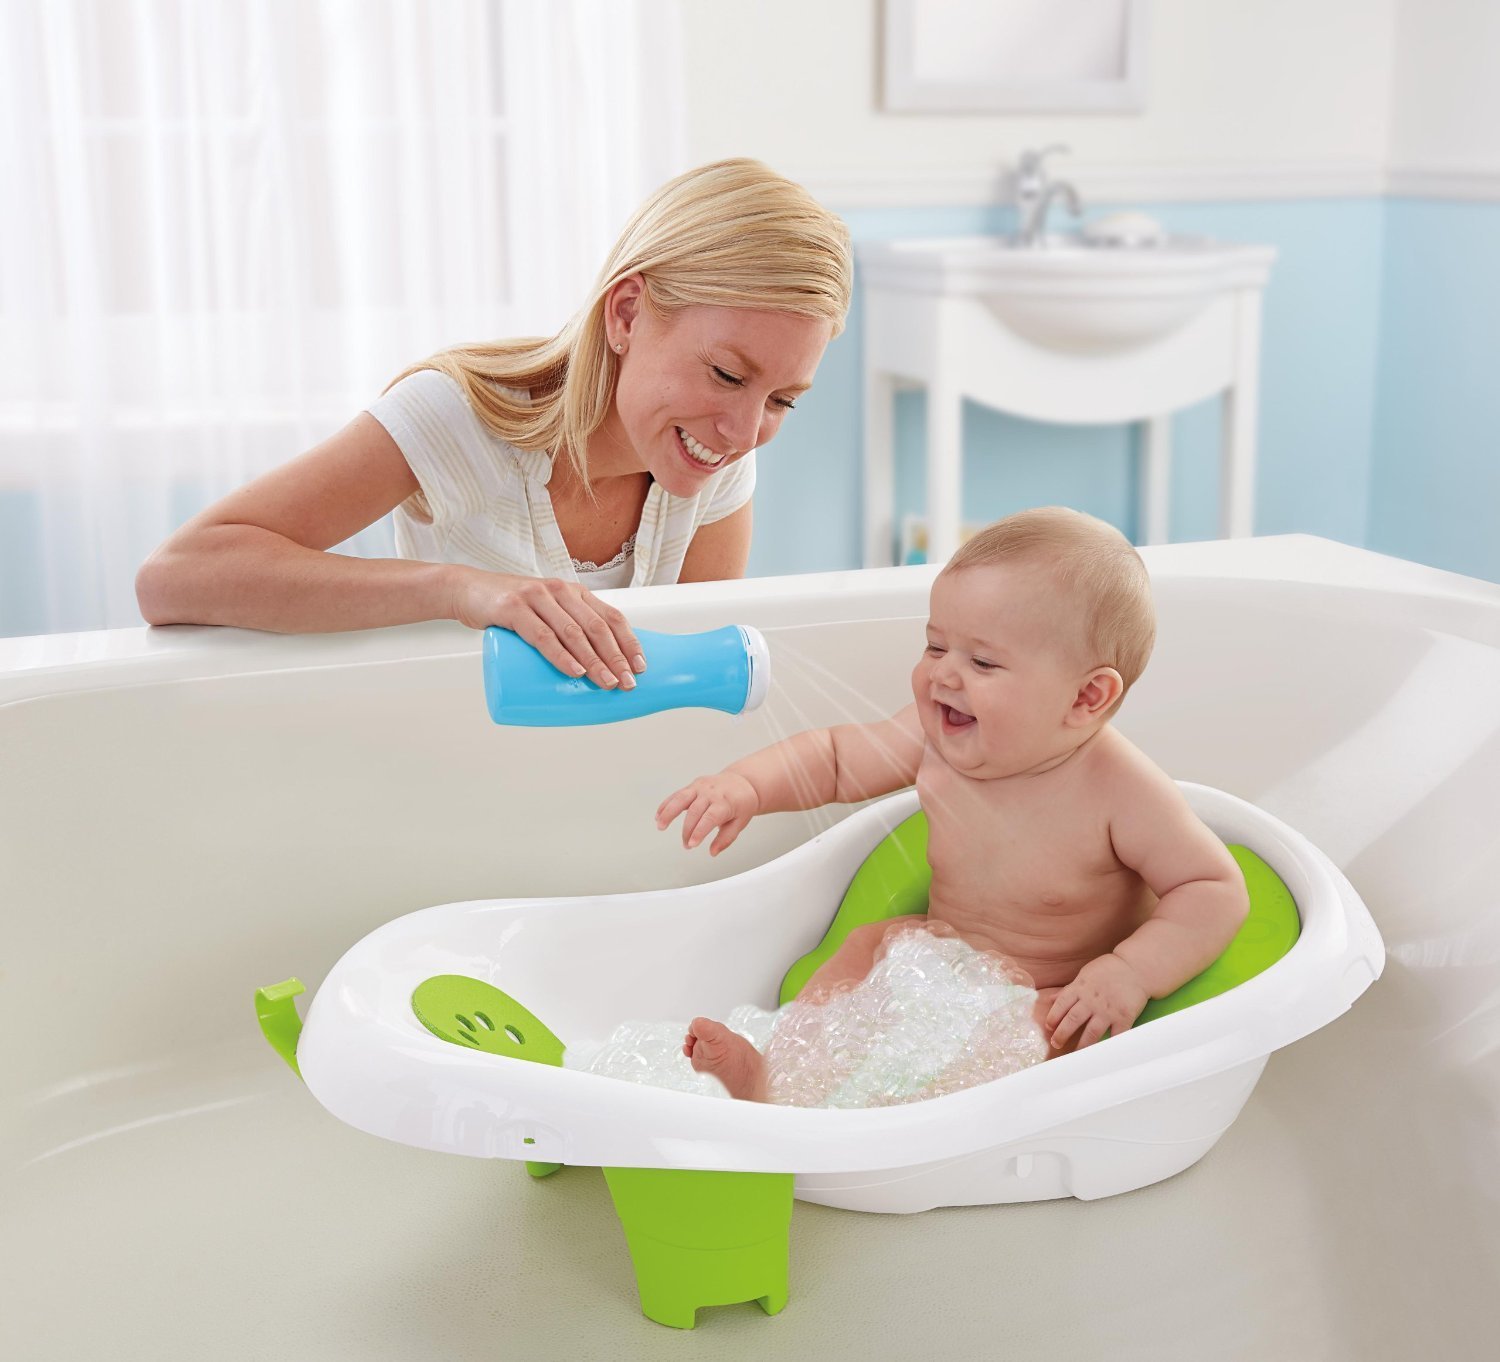 Lựa chọn đồ dùng khi tắm đảm bảo an toàn cho trẻ